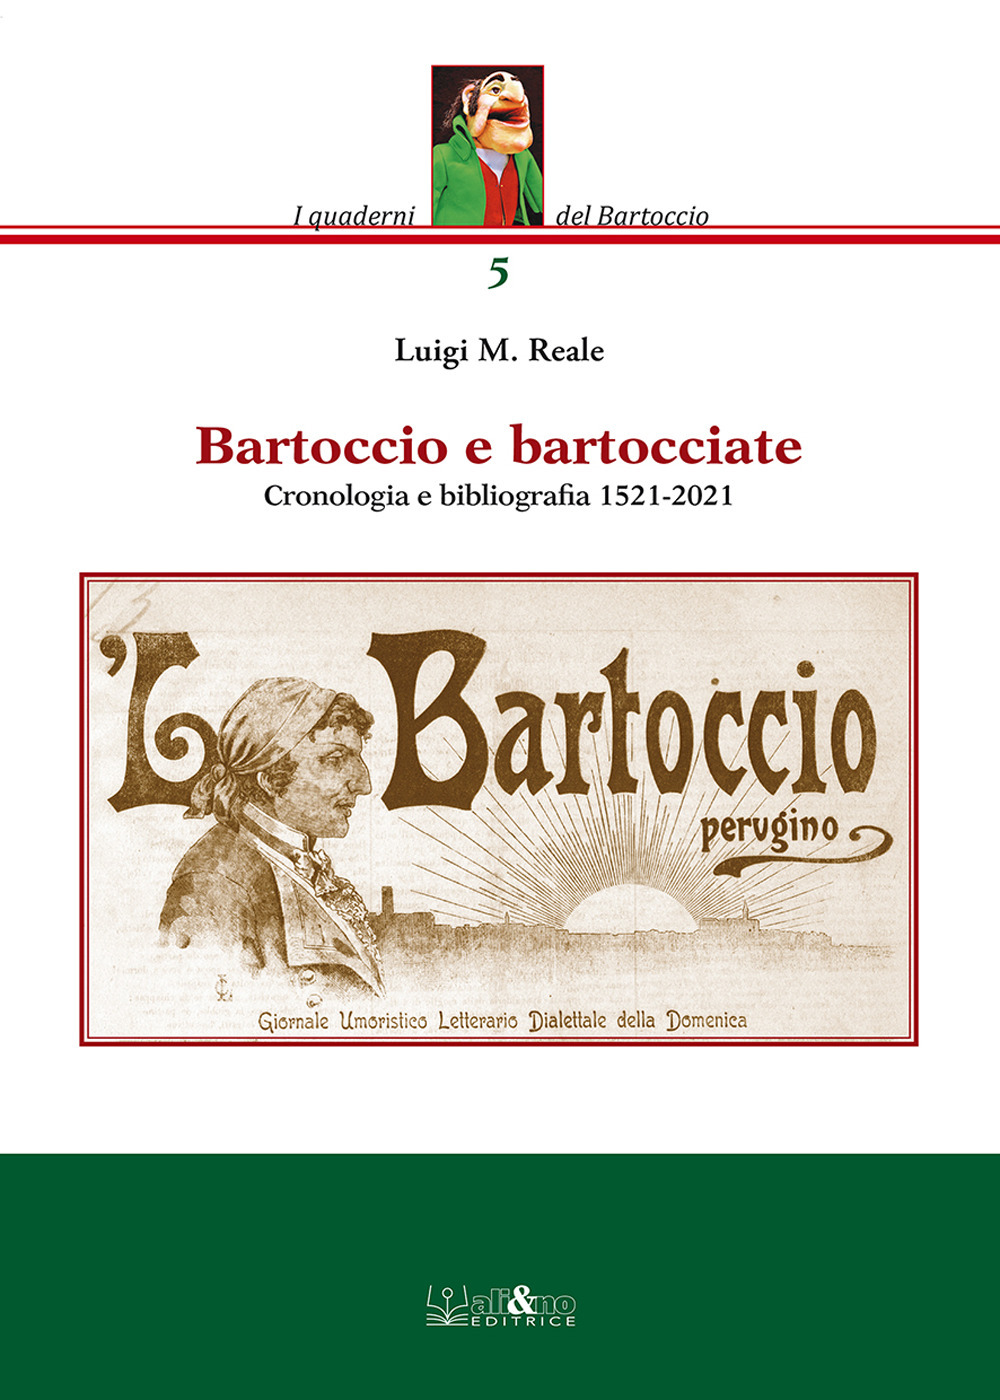 Bartoccio e bartocciate. Cronologia e bibliografia 1521-2021